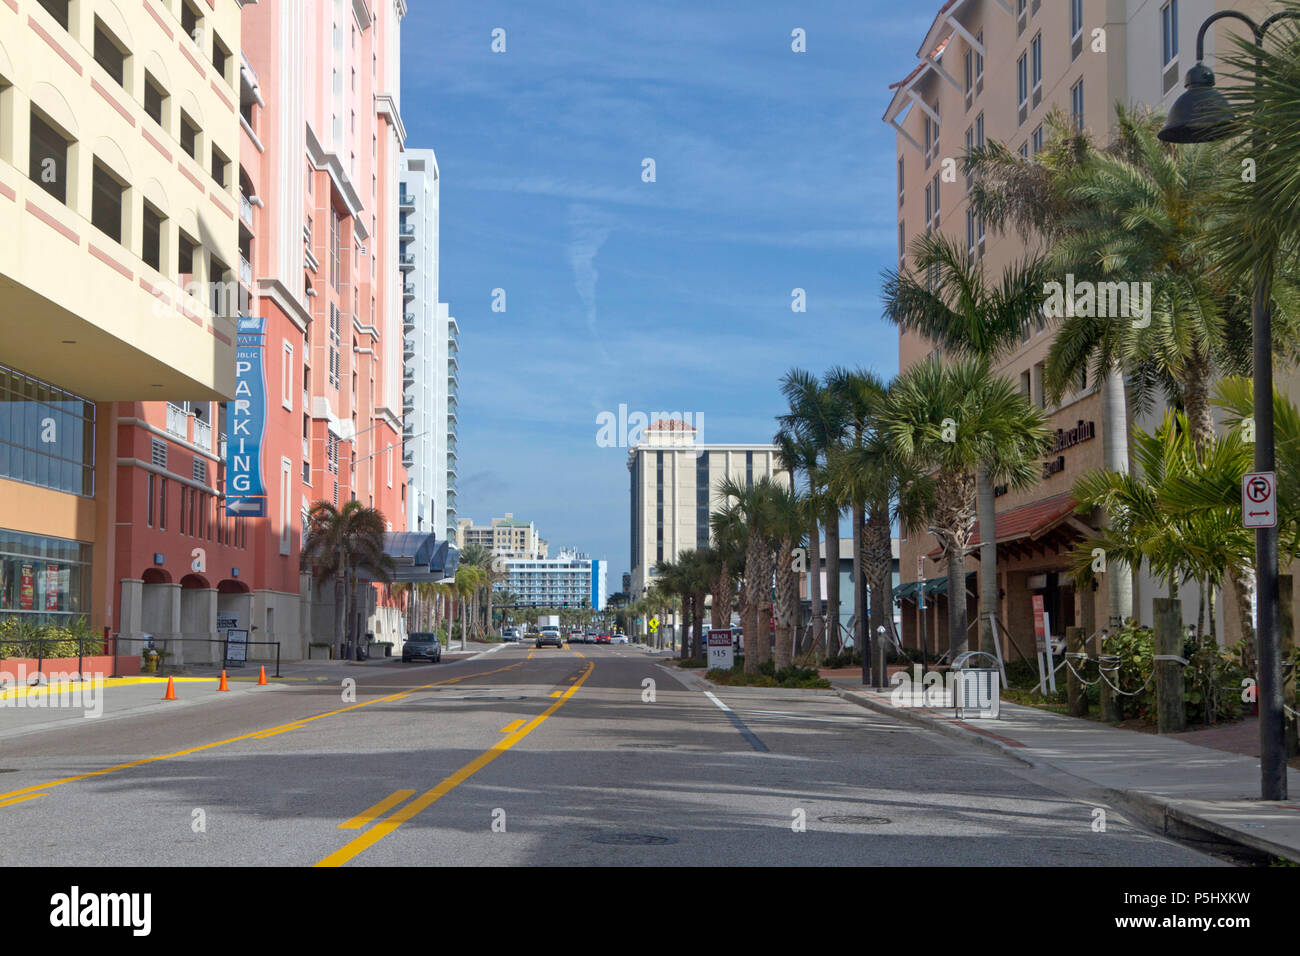 CLEARWATER, Floride, USA - 7 février 2018 : ombragé, calme, coloré, palm tree lined street dans le centre-ville de Clearwater, en Floride, dans le sud des Etats-Unis, un pop Banque D'Images